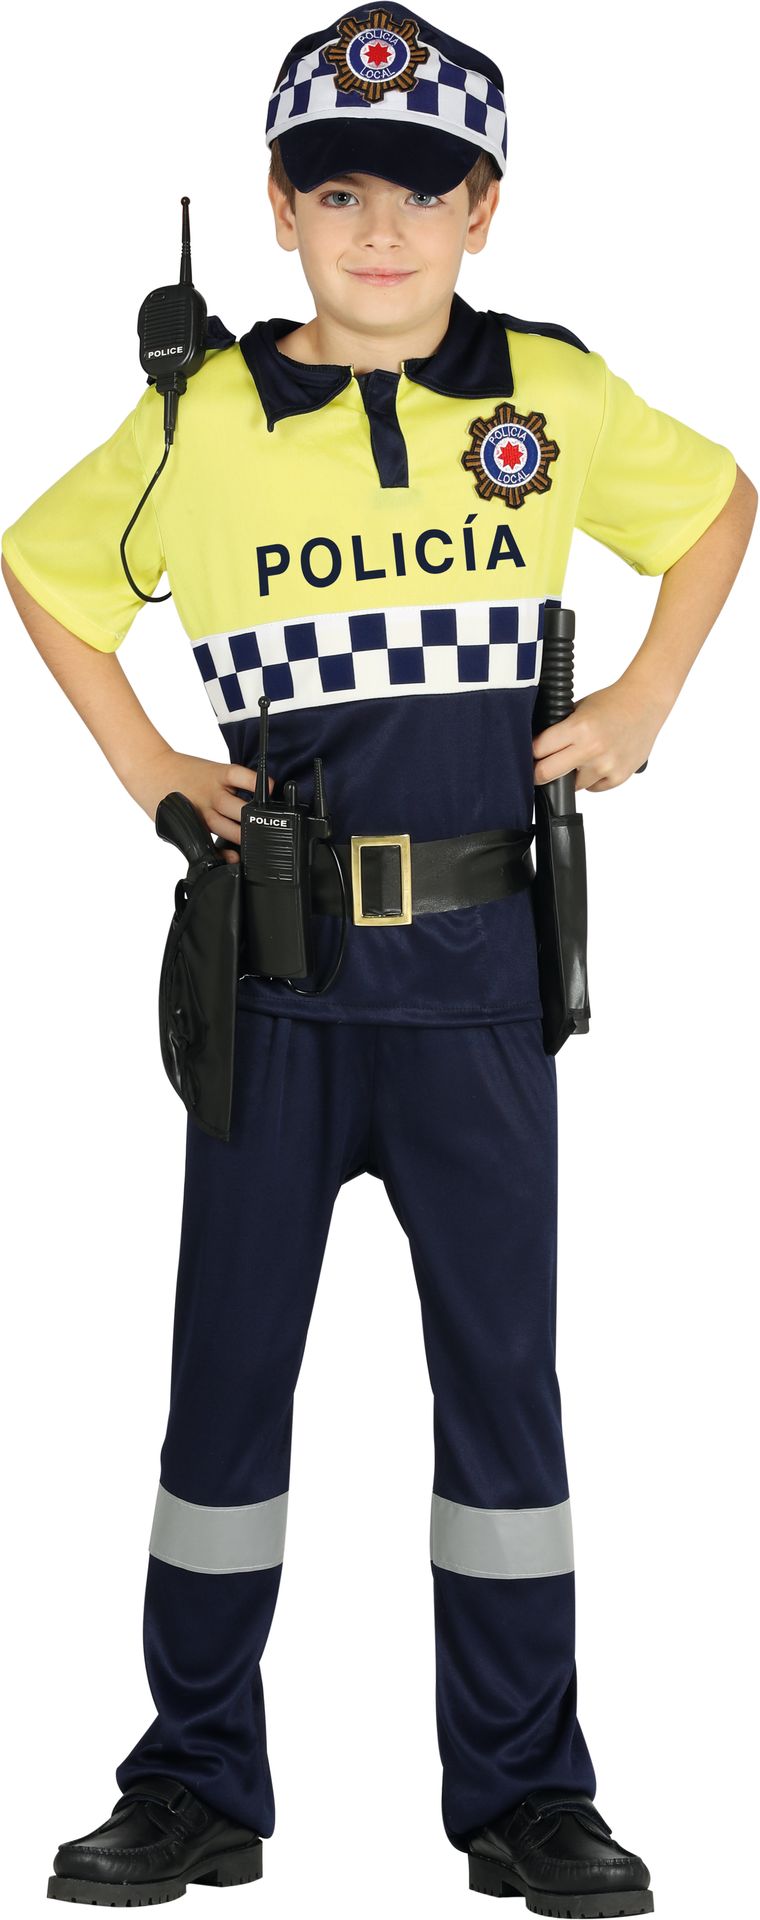 Spaans politie kostuum kind